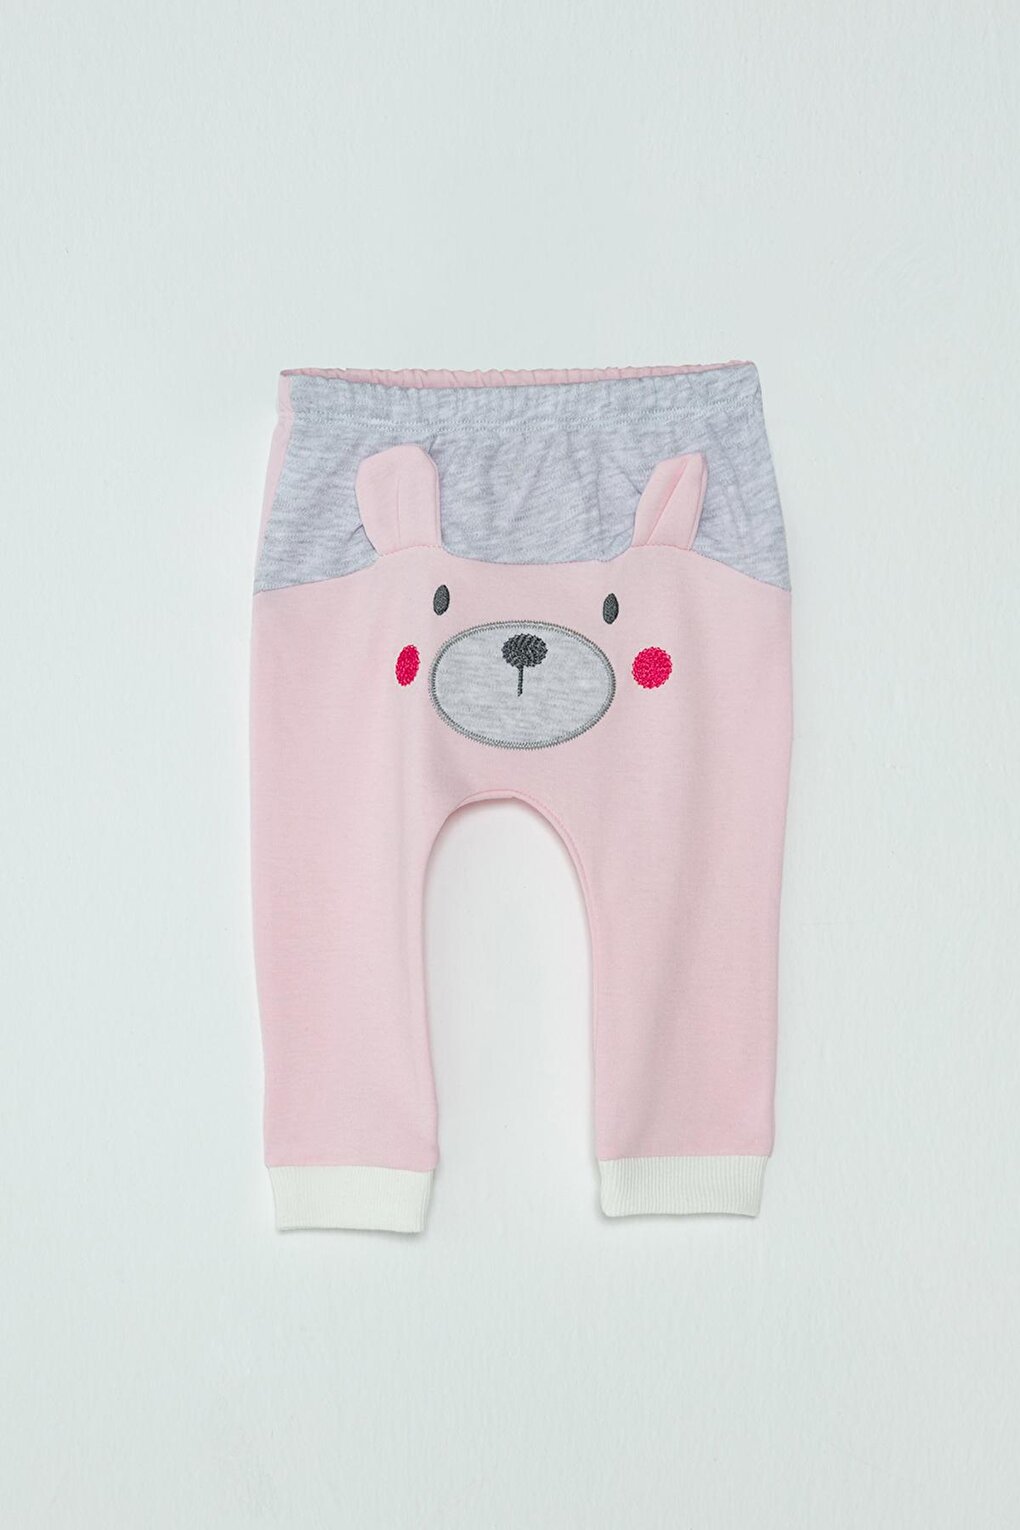 цена Эластичные спортивные штаны с принтом медведя для маленьких девочек JackandRoy, серо-розовый